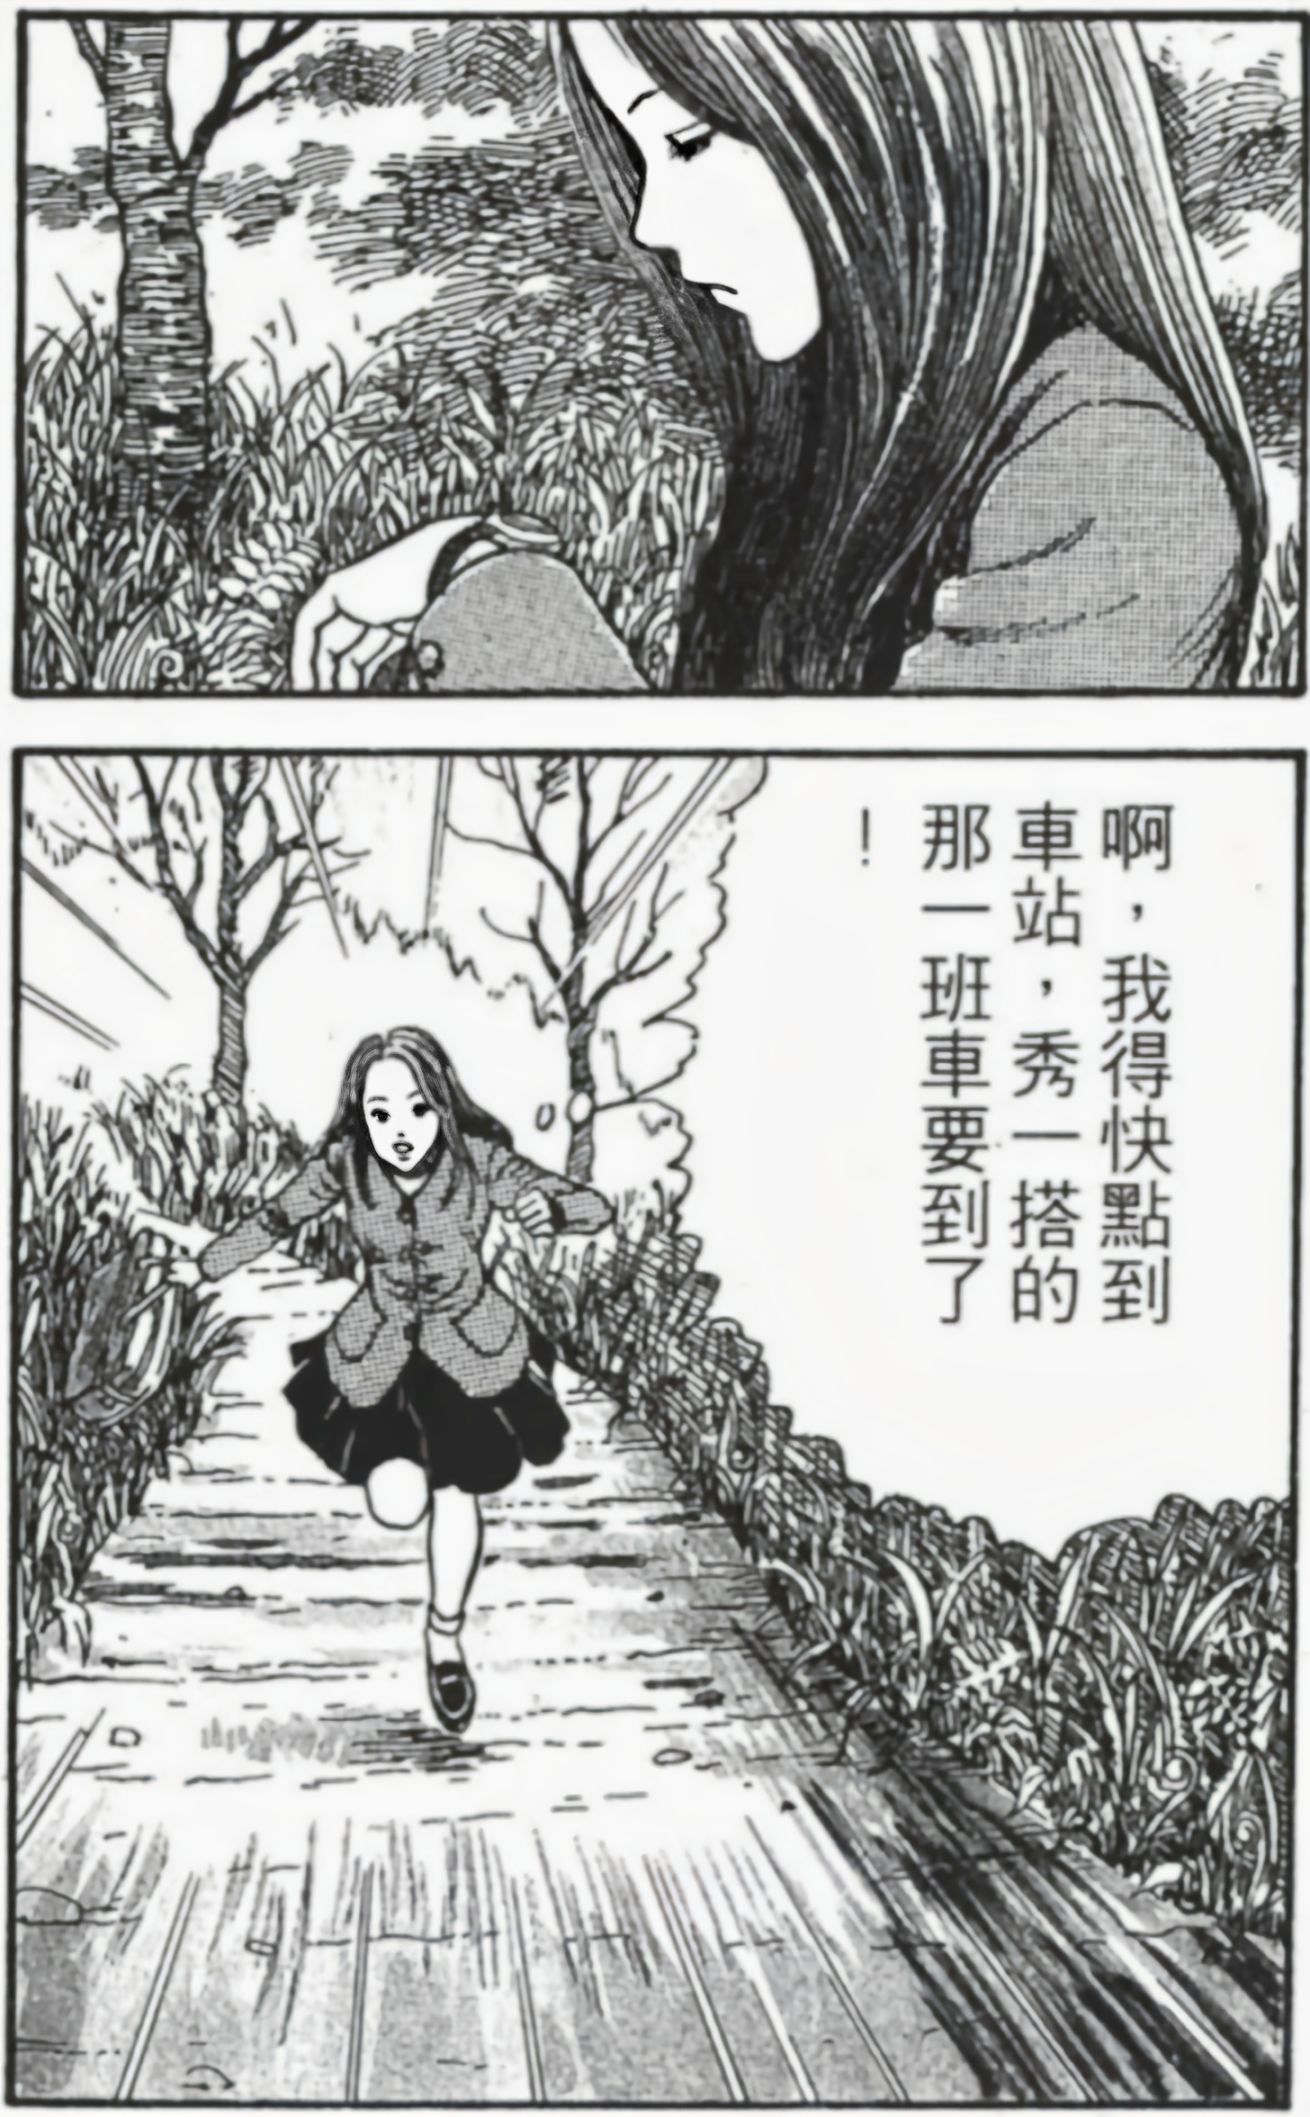 【影视动漫】伊藤润二的顶级恐怖漫画《漩涡》-第5张